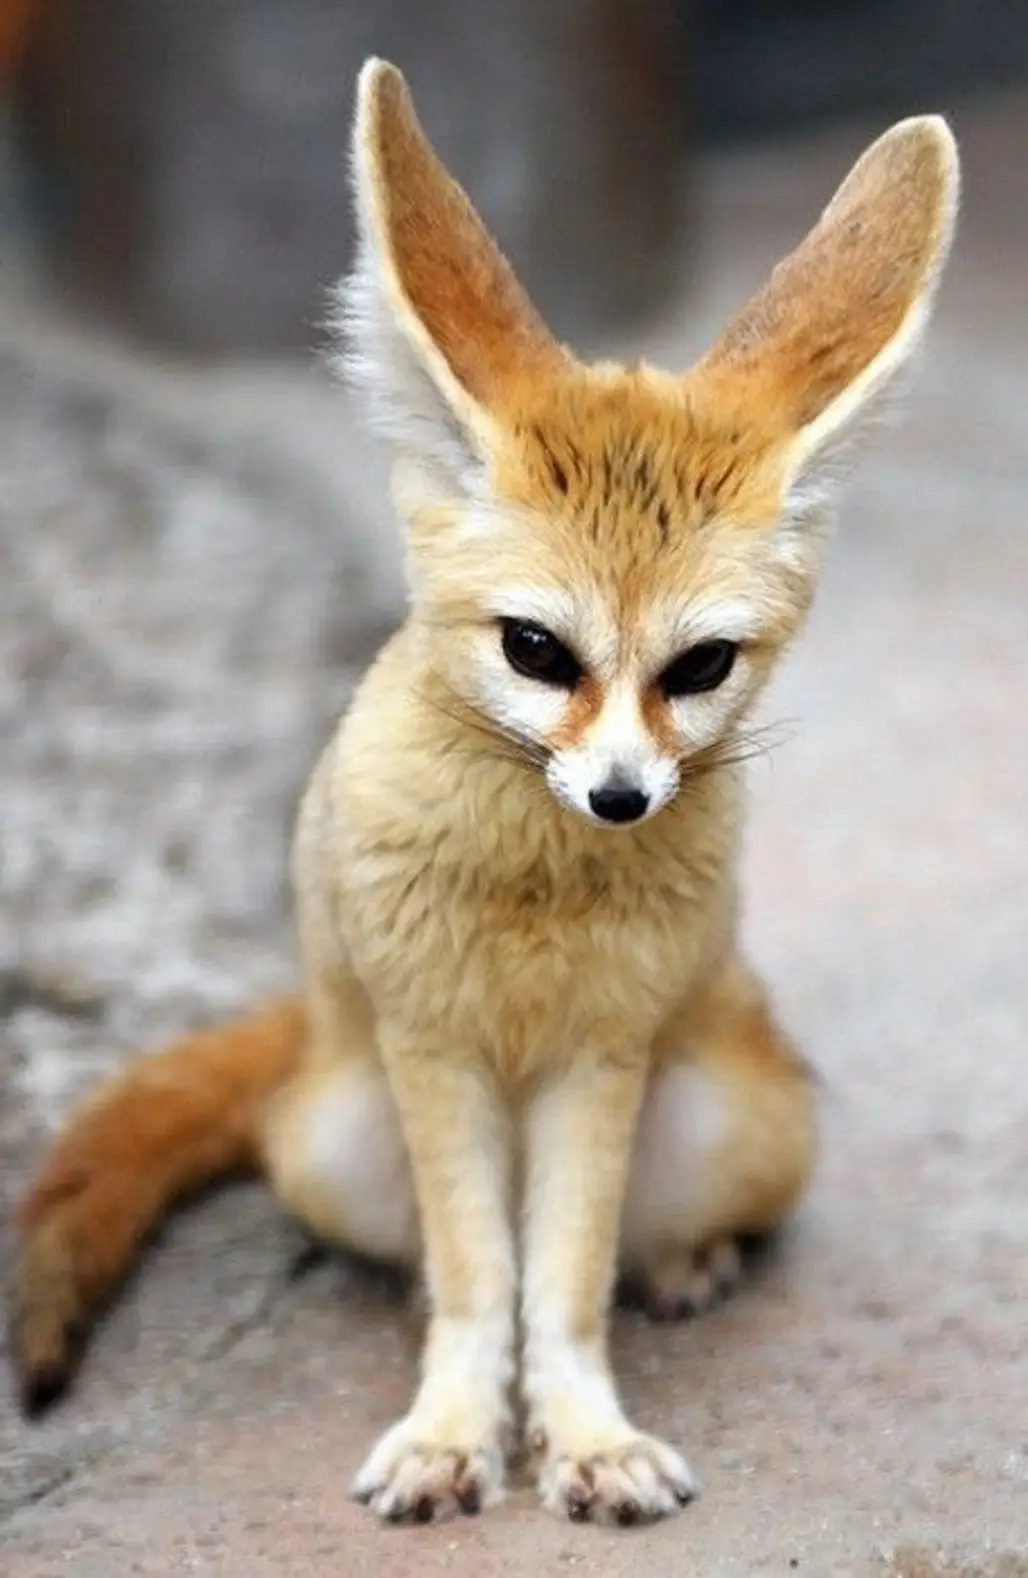 The Fennec Fox